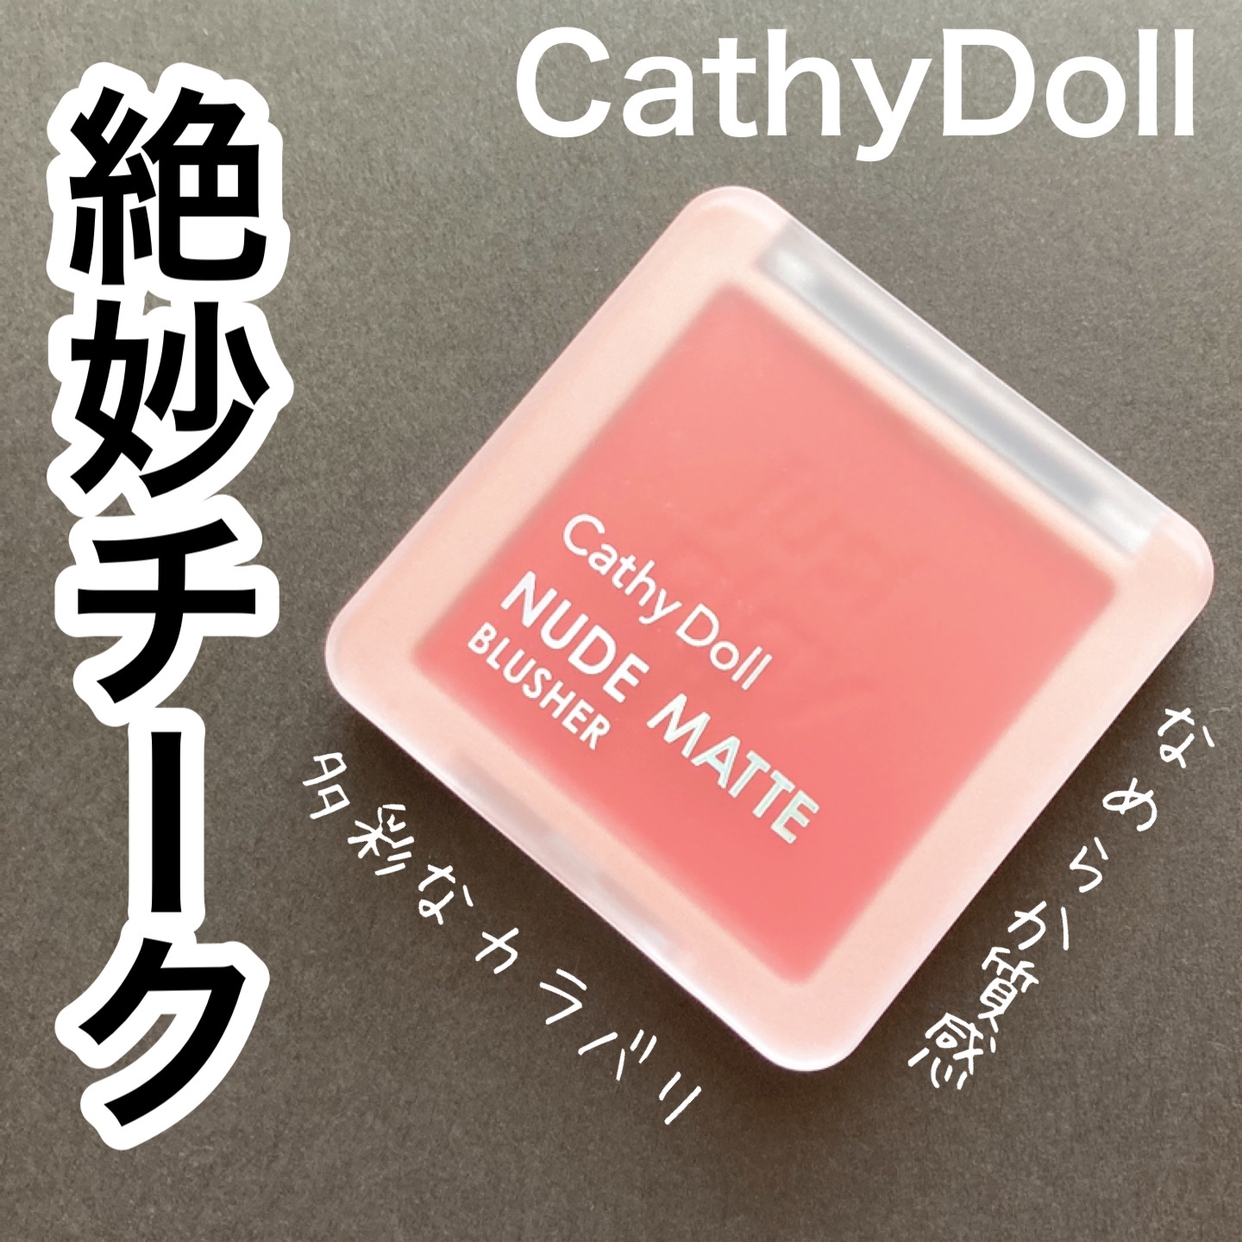 Cathy Doll(キャシードール) ヌードマットブラッシャーを使ったyunaさんのクチコミ画像1